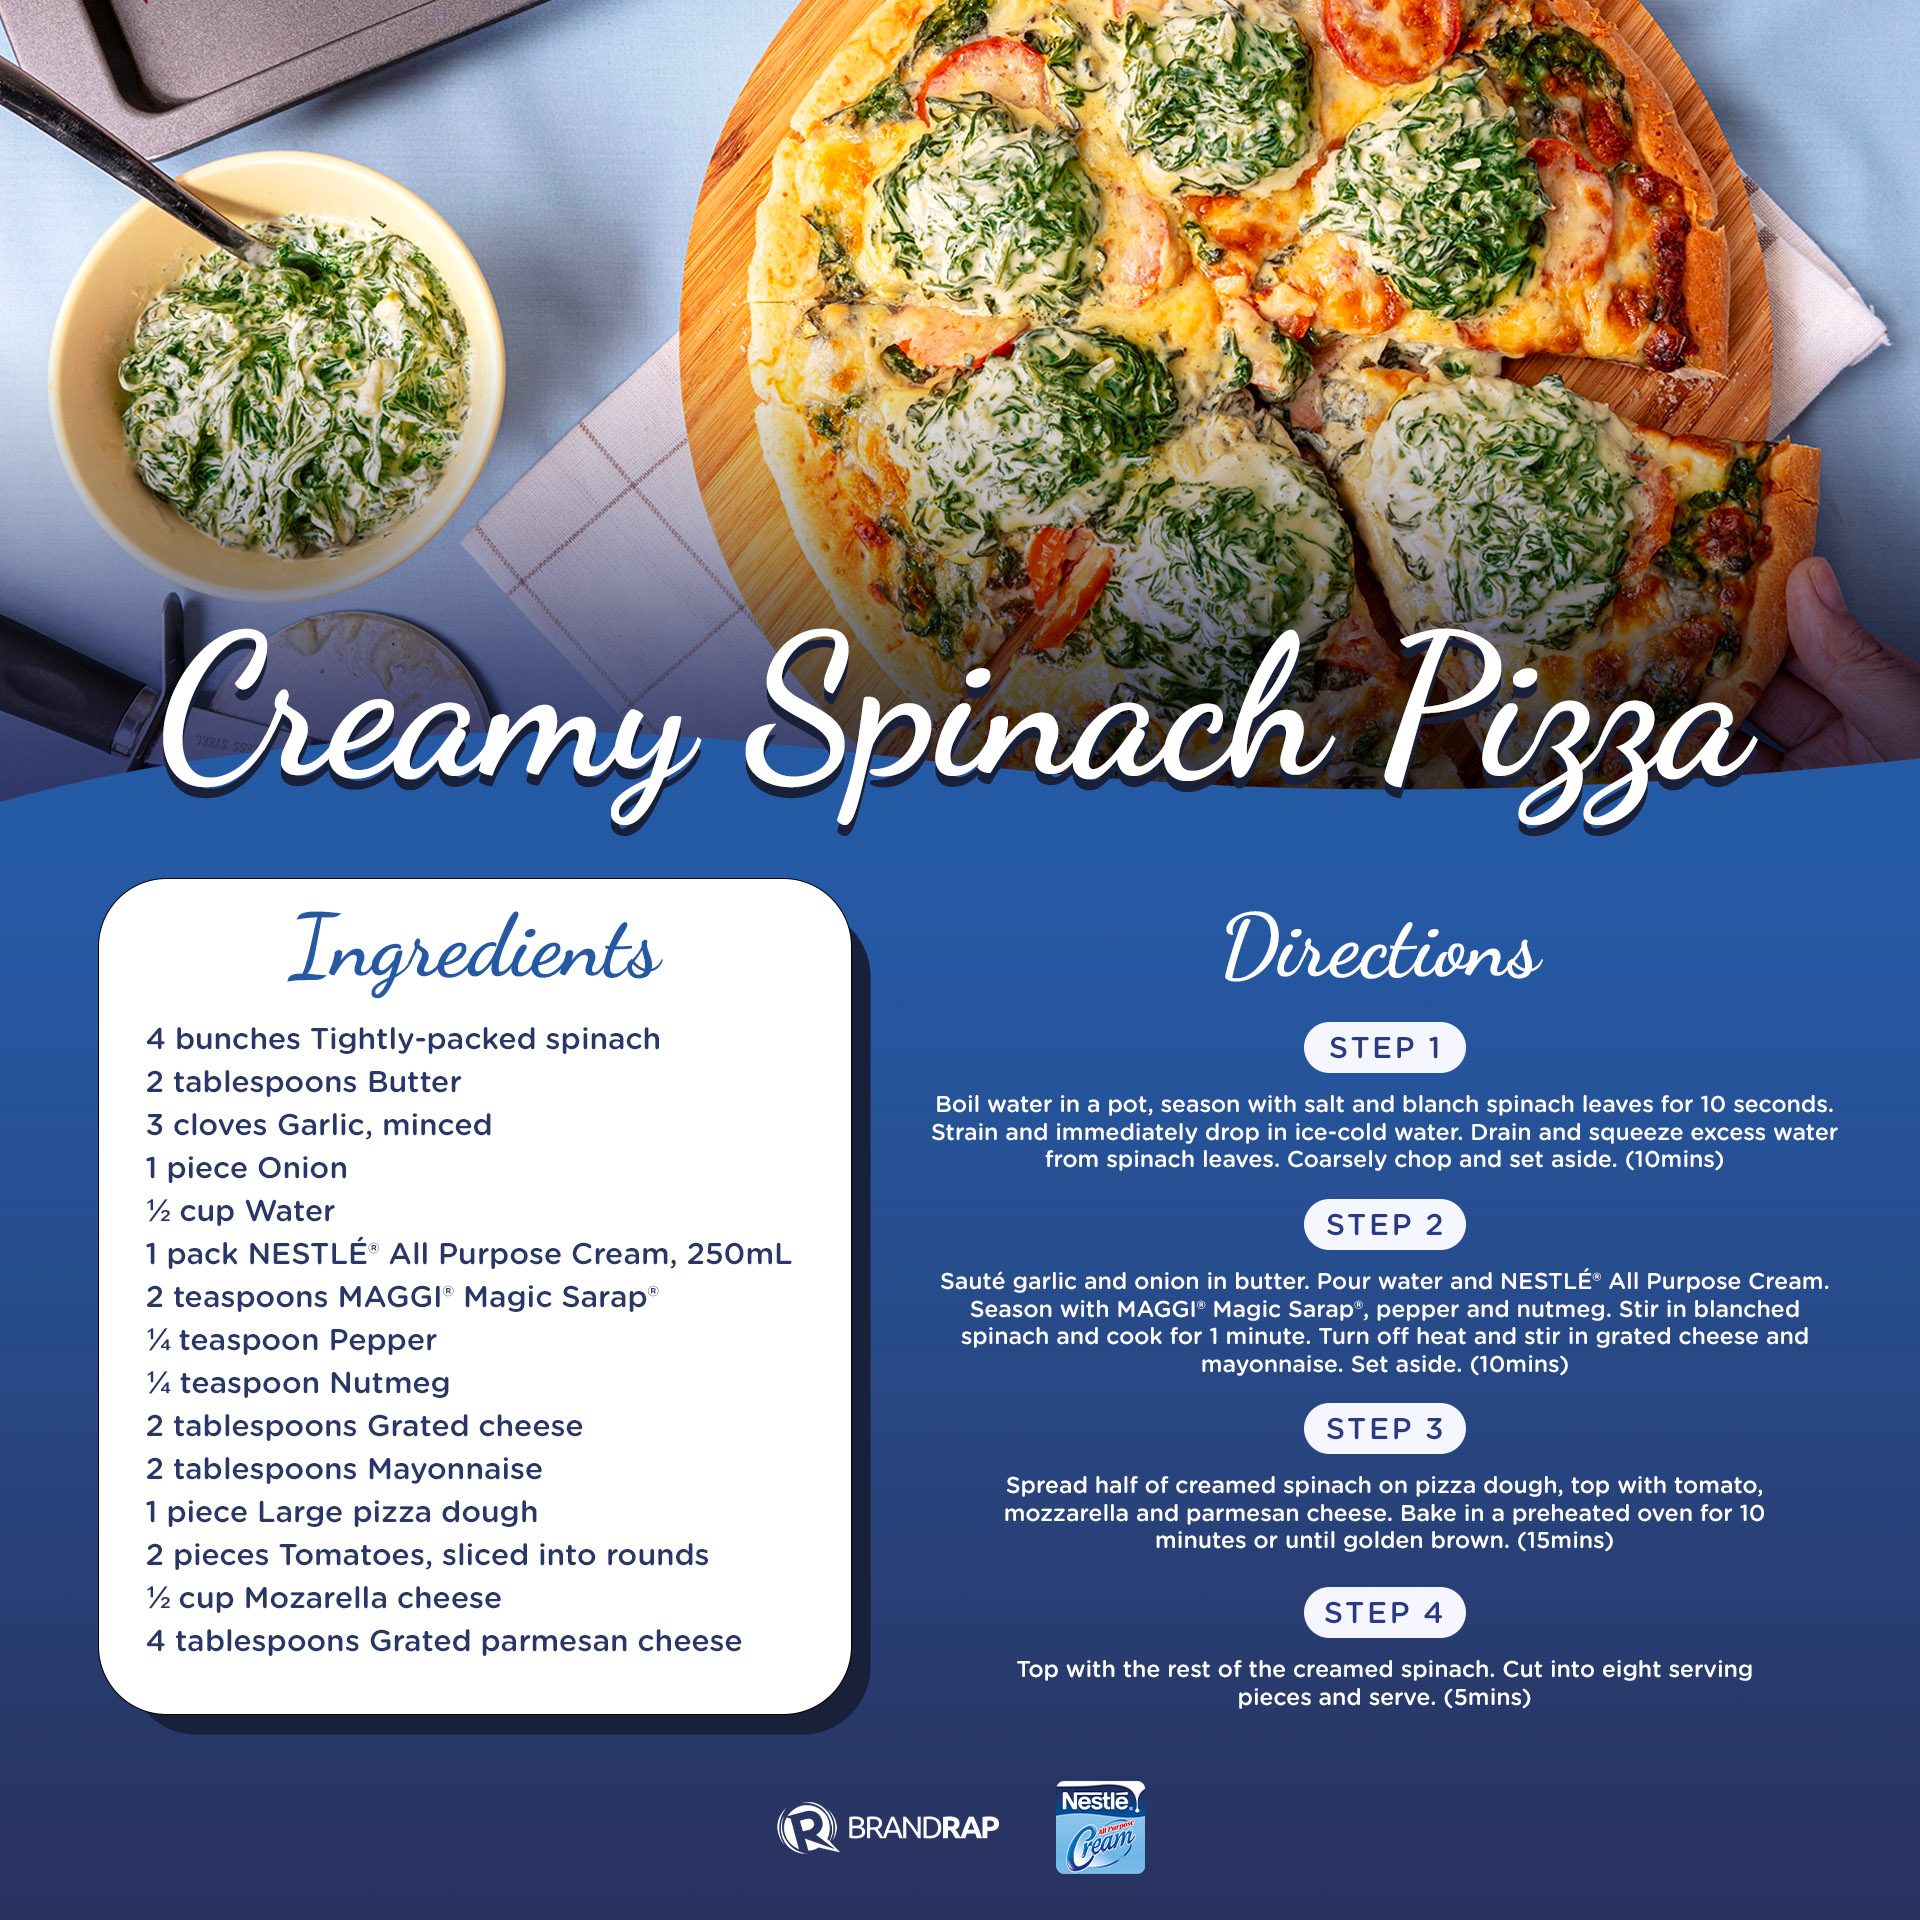 Creamy Spinach Pizza, Recipes